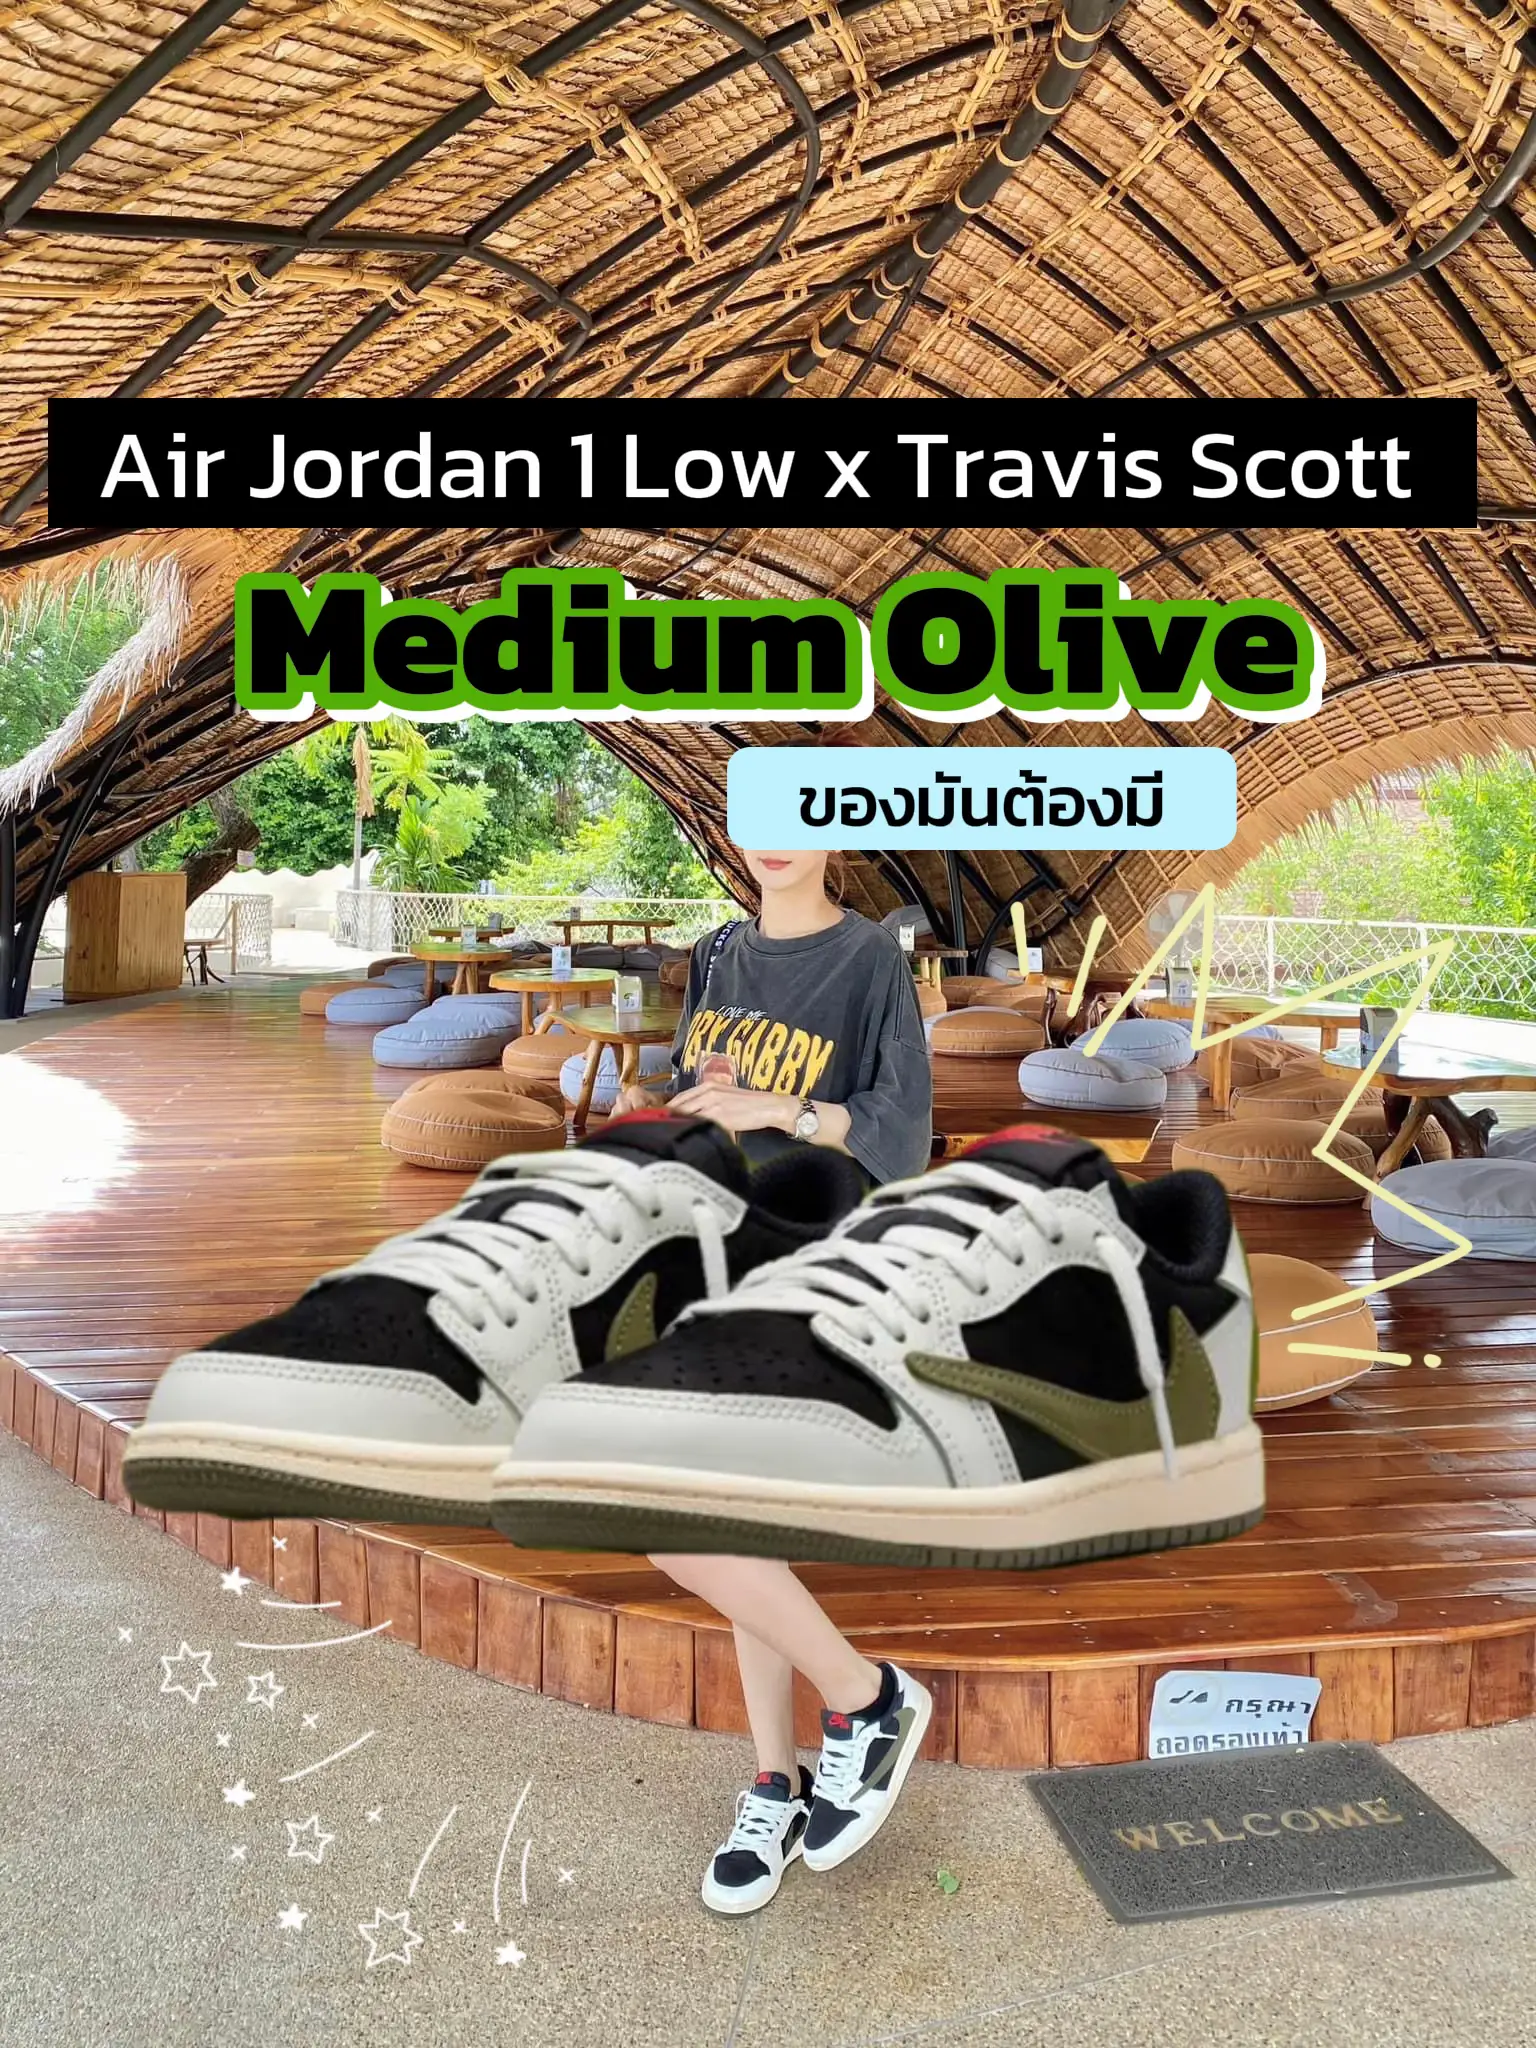 リーク】Air Jordan 1 Low x Travis Scott | Nookzzzが投稿したフォト ...